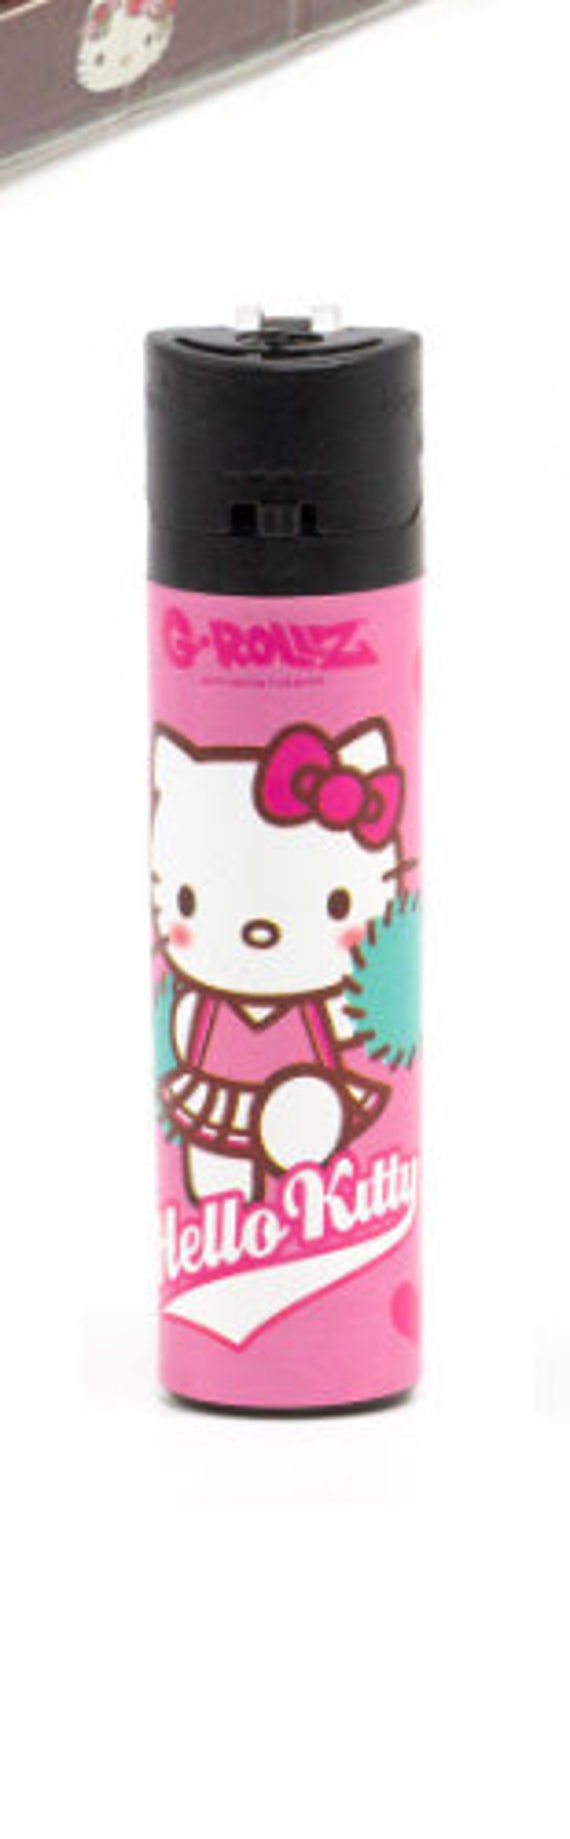 Vassoi Roll Hello Kitty Cute Love by G-Rollz